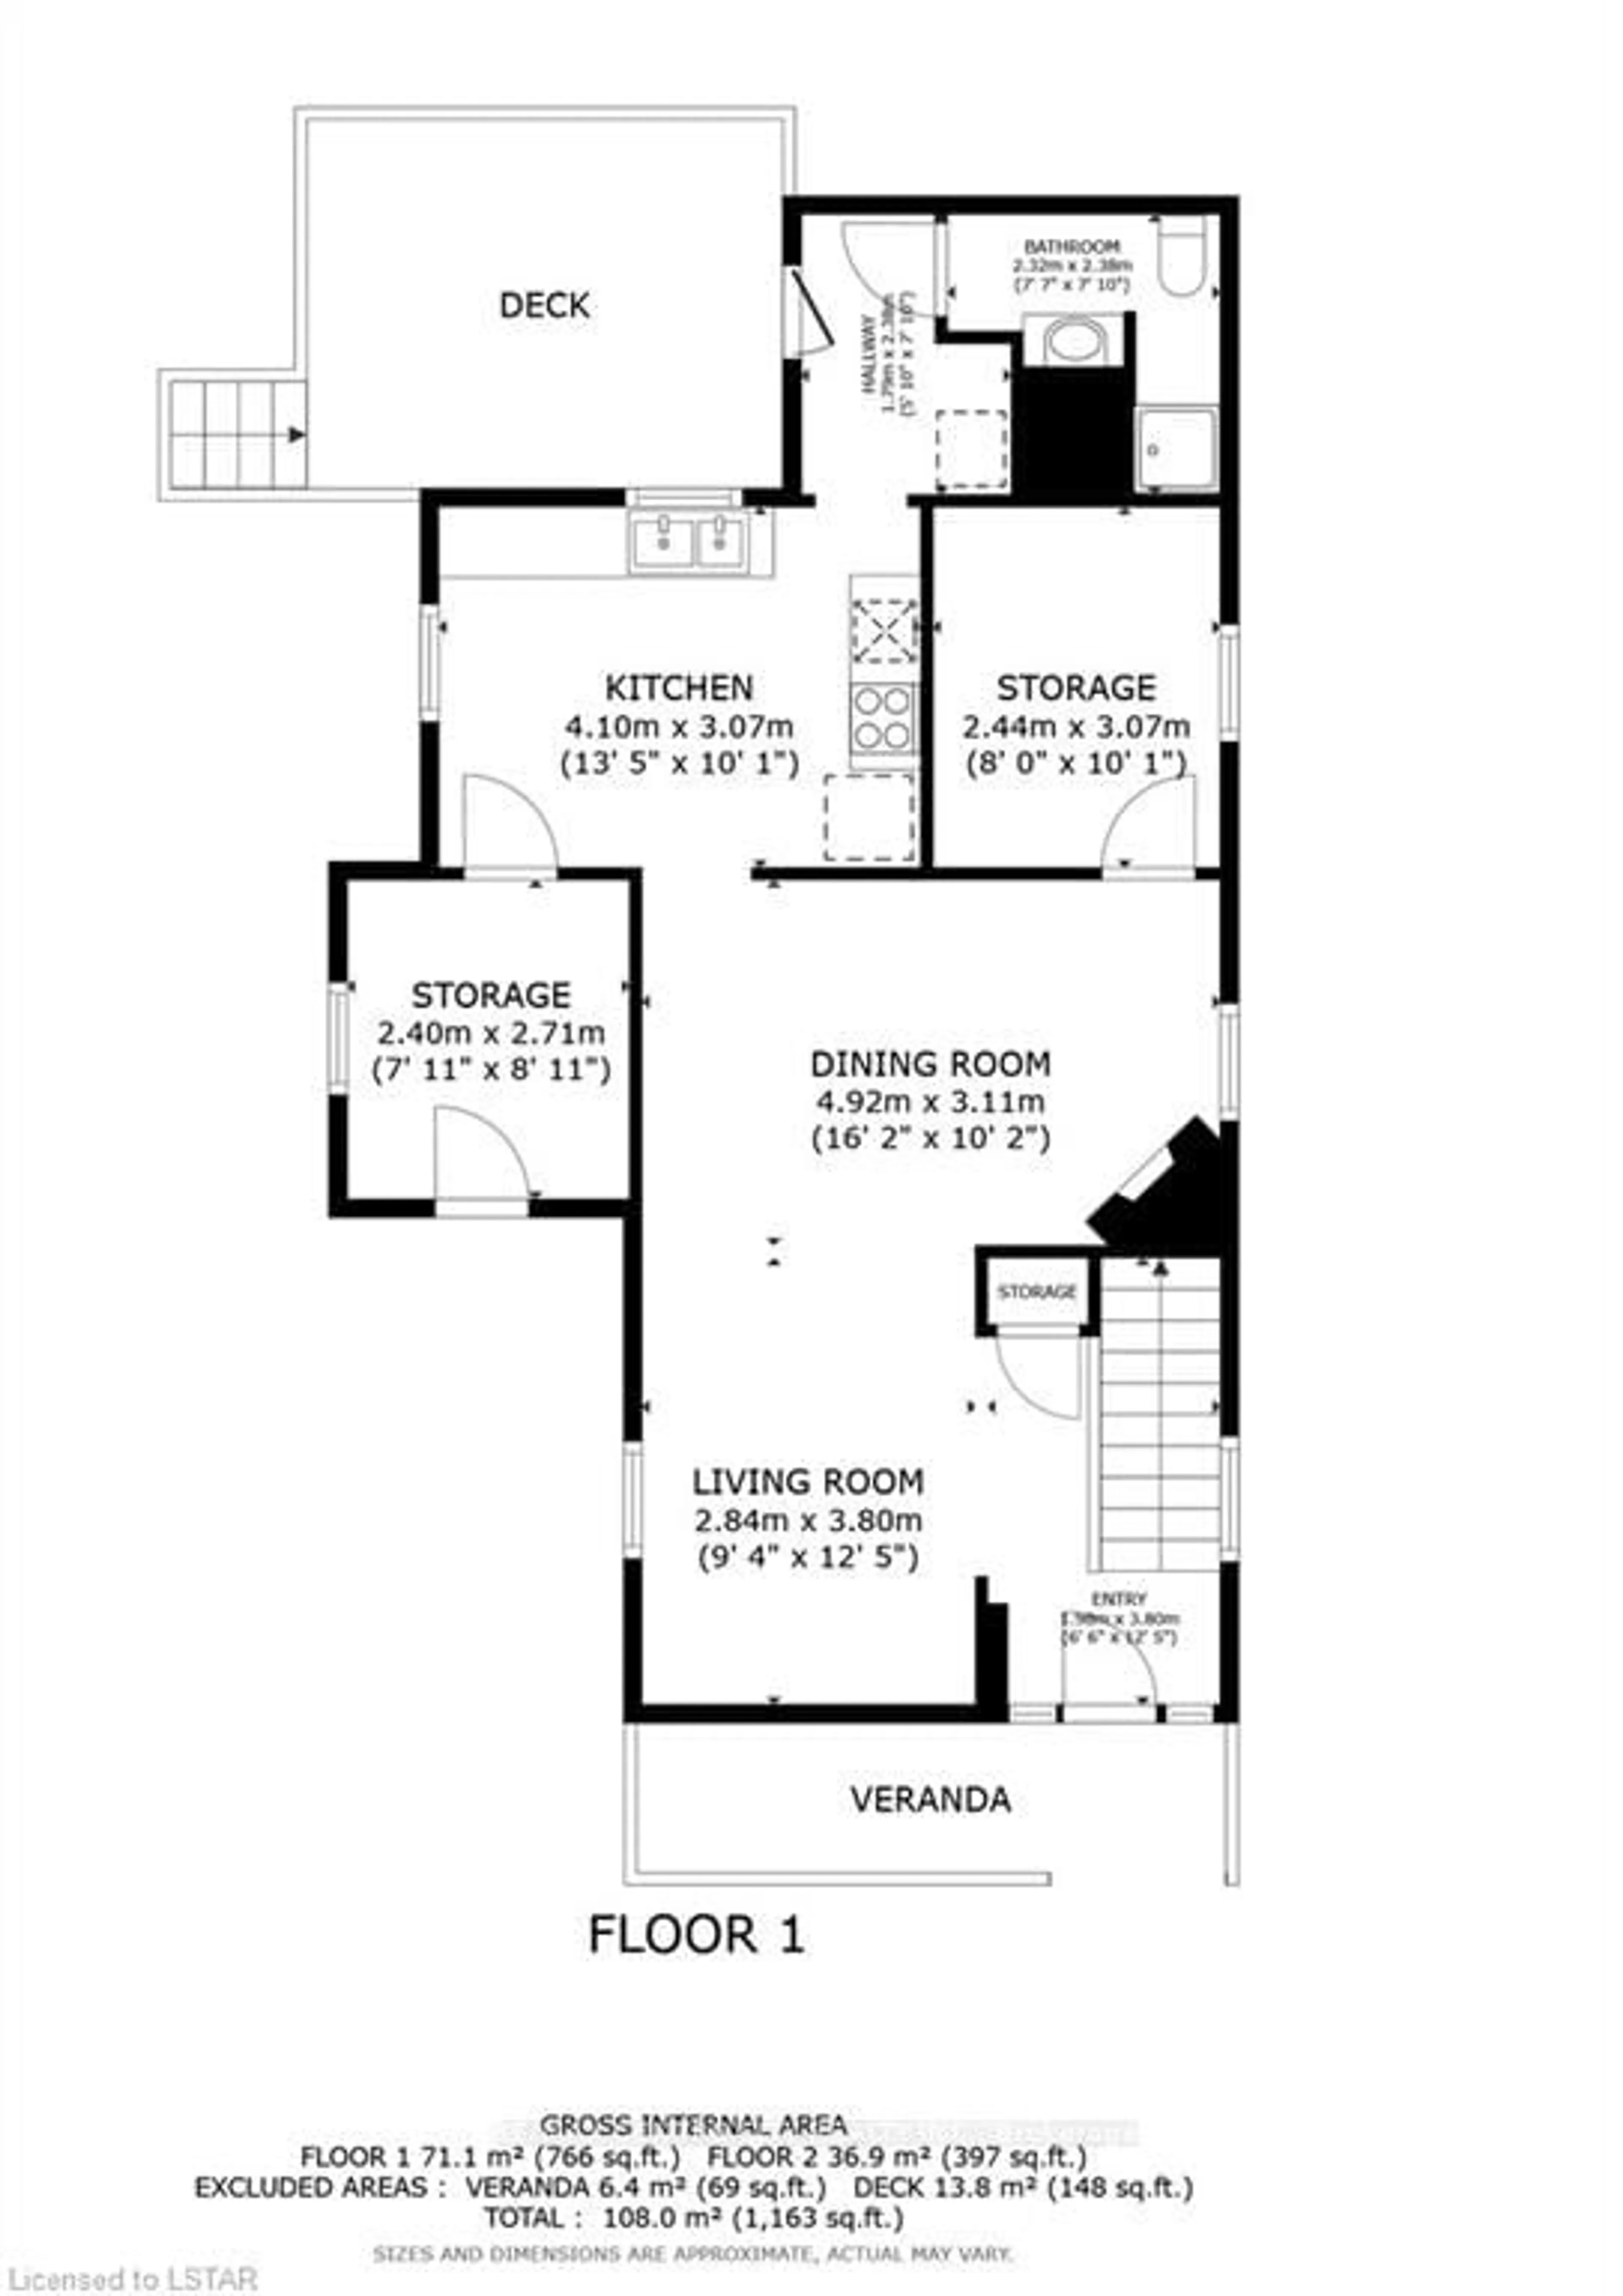 Floor plan for 88 Richmond St, Strathroy-Caradoc Ontario N7G 2Y9